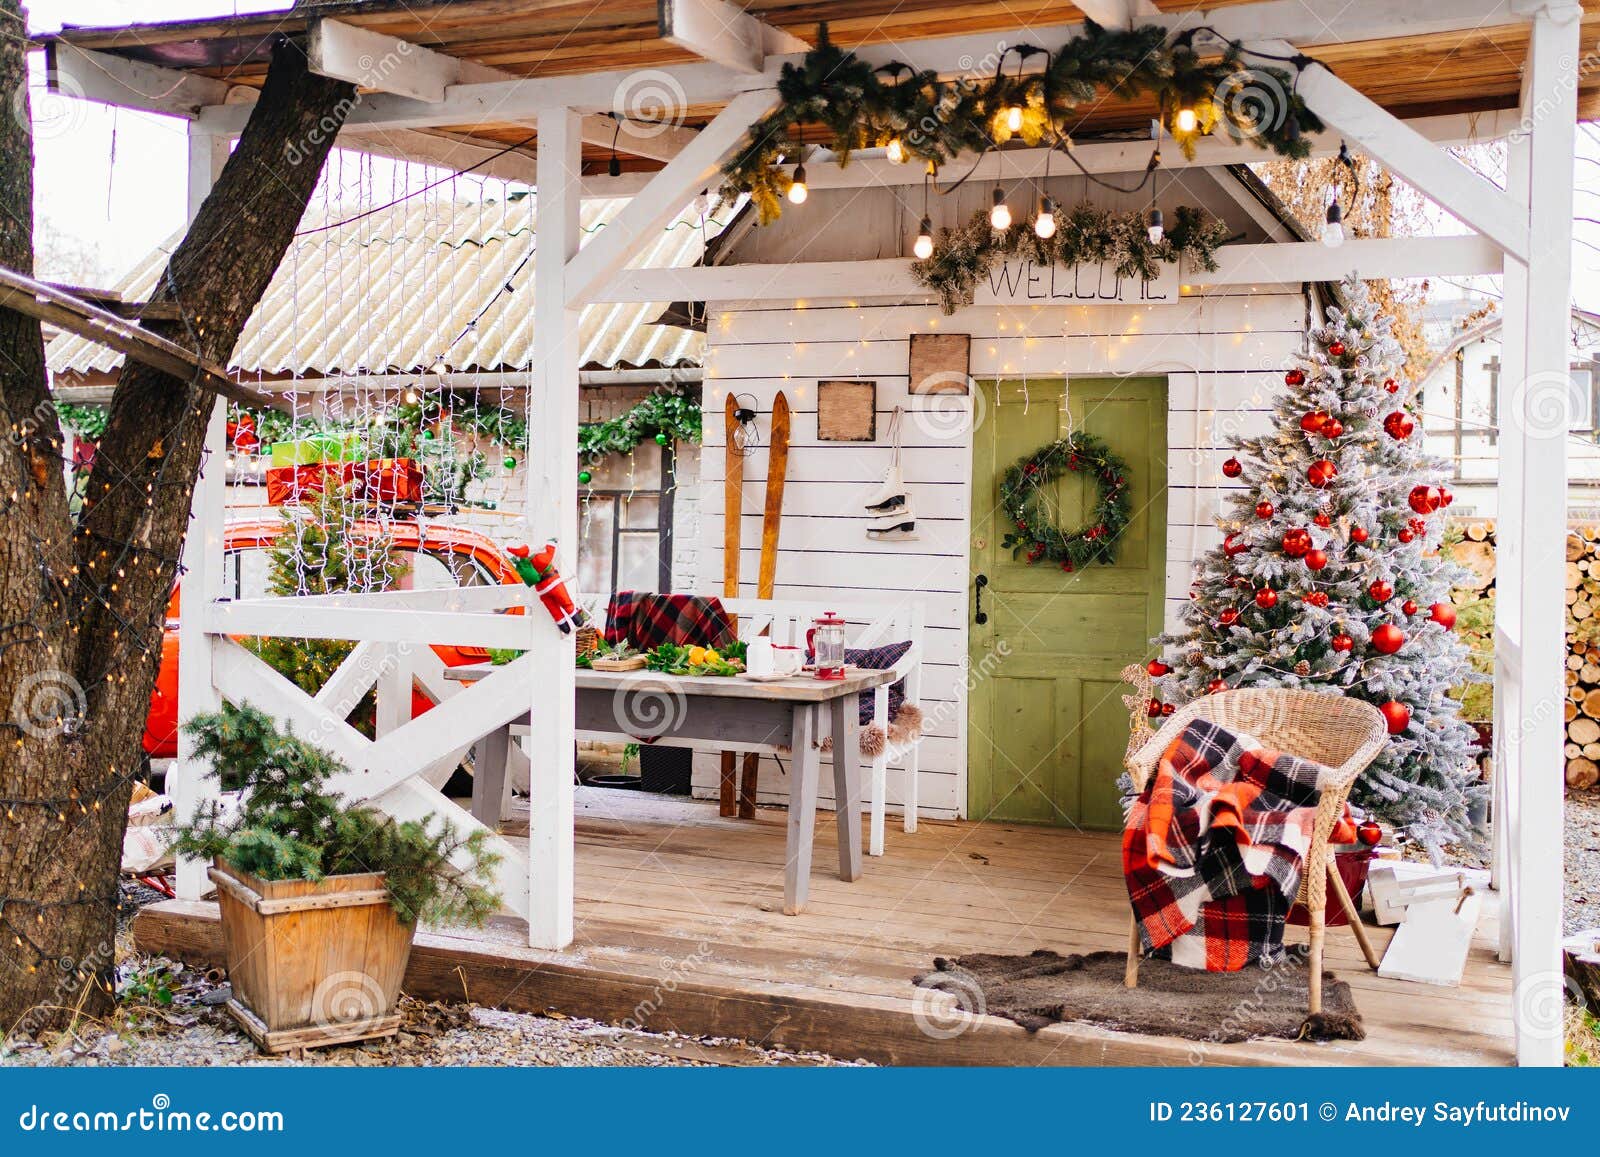 Tradição De Decoração Da Casa De Natal. árvore De Natal Na Varanda Imagem  de Stock - Imagem de grinalda, dezembro: 236127601